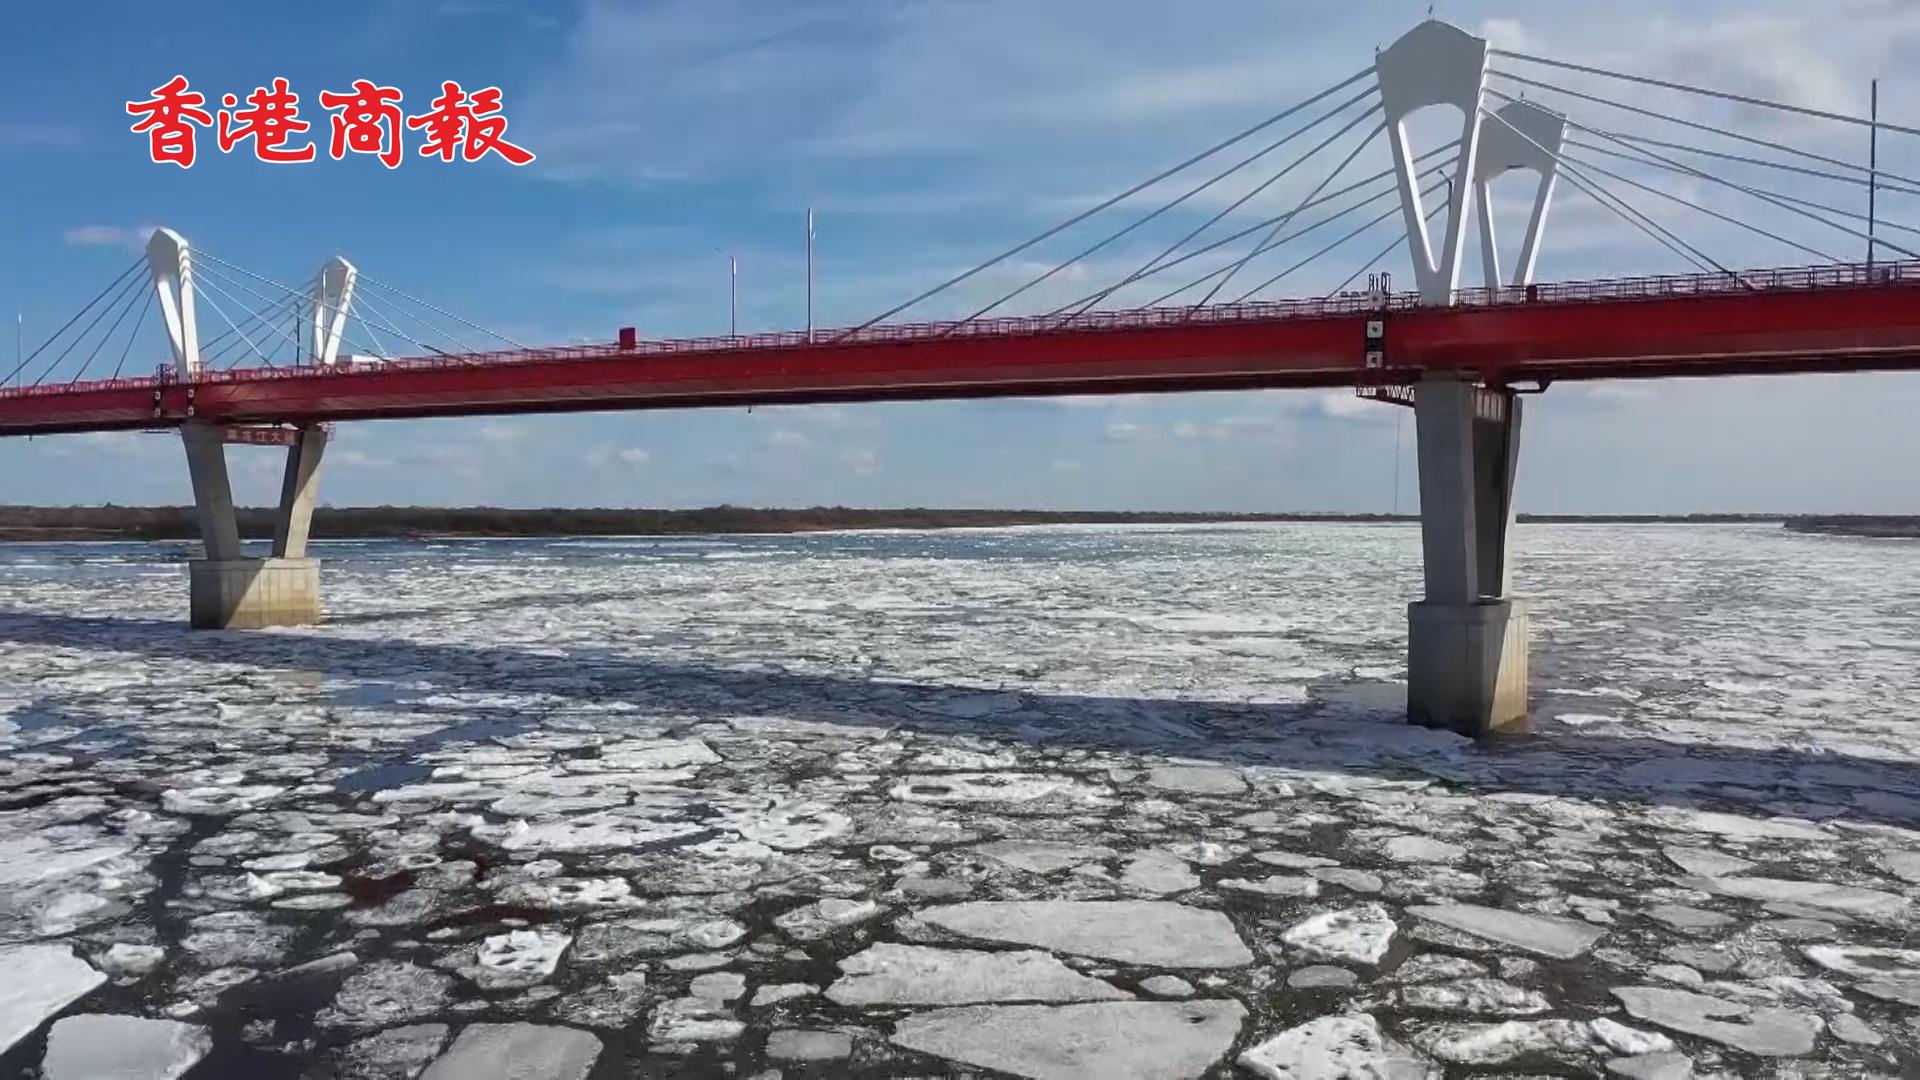 【萬水千山總是情】有片丨黑龍江黑河段現跑冰排壯觀景象